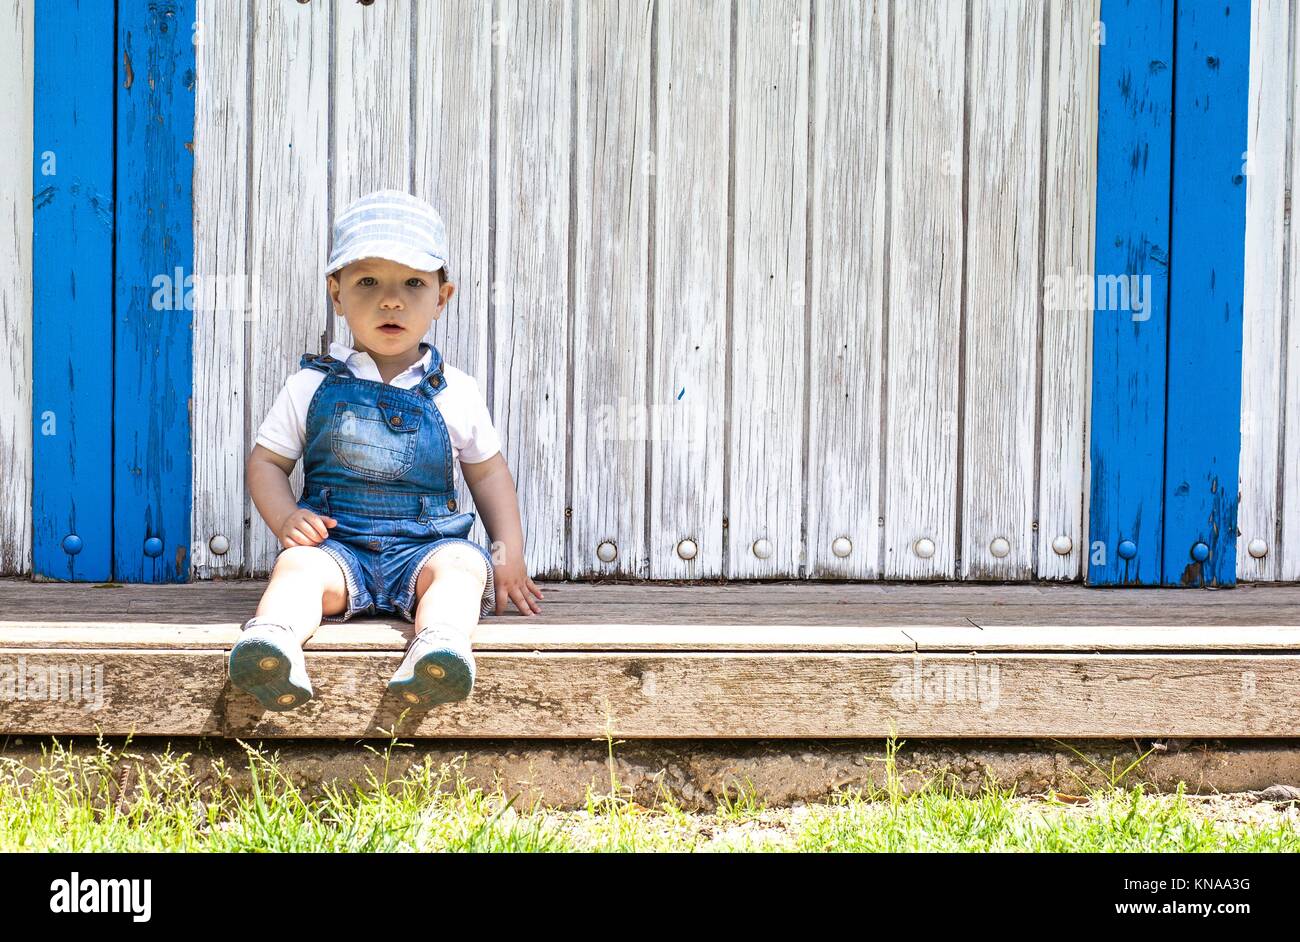 2 años de edad, sentada retrato en cabaña de madera. Él lleva un gorro. Foto de stock